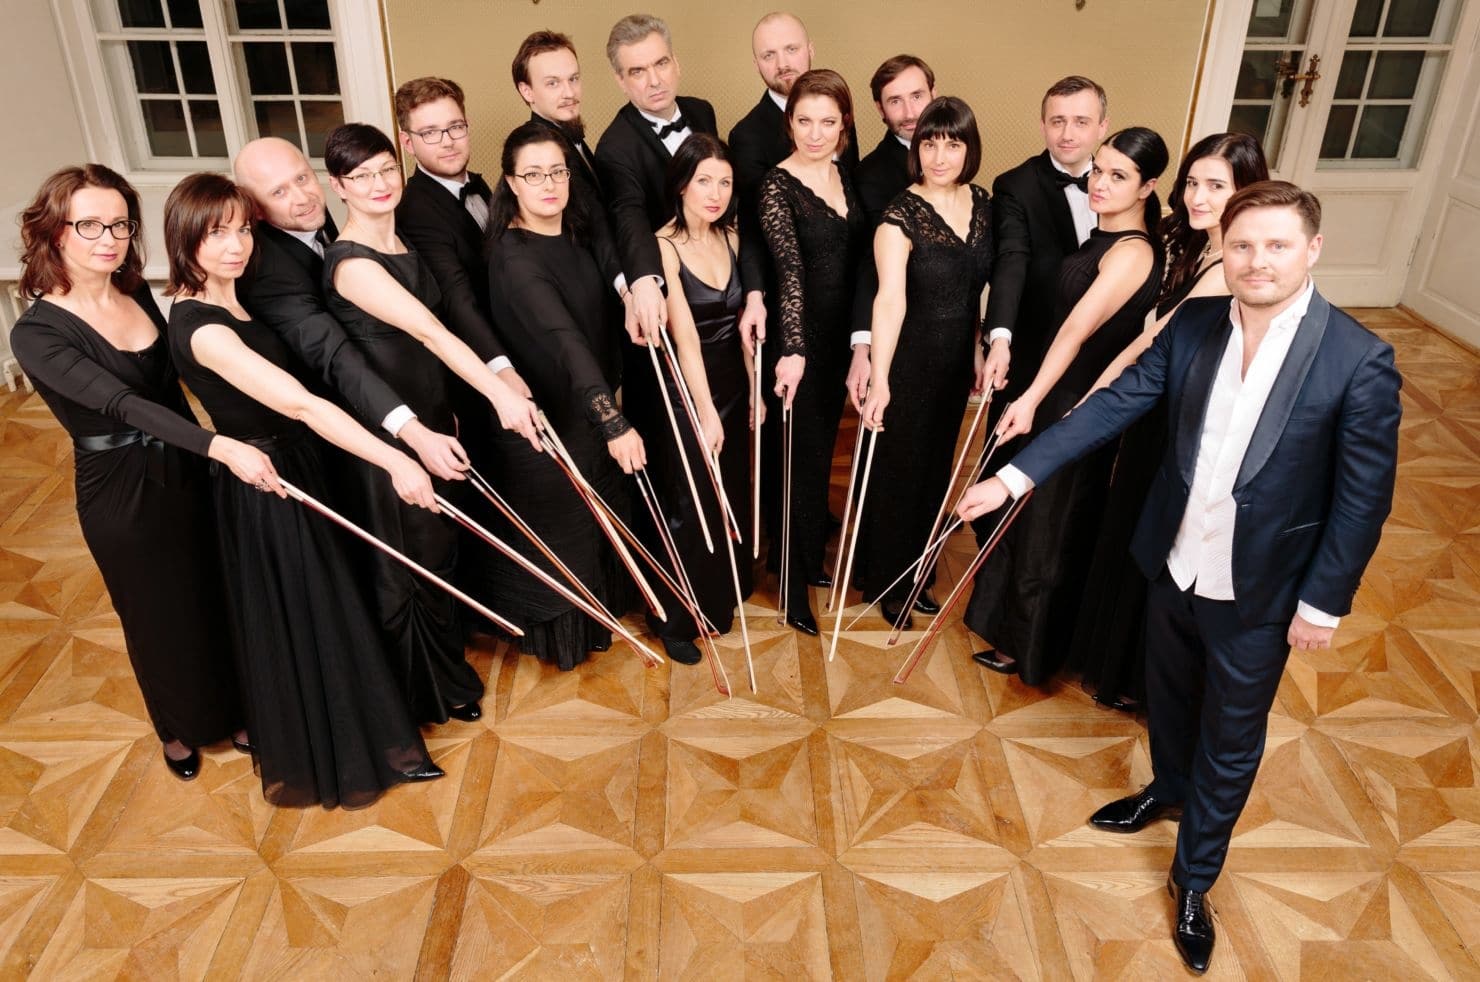 Das polnische Orchester “Sinfonietta Cracovia” mit Dirigent Jurek Dybal